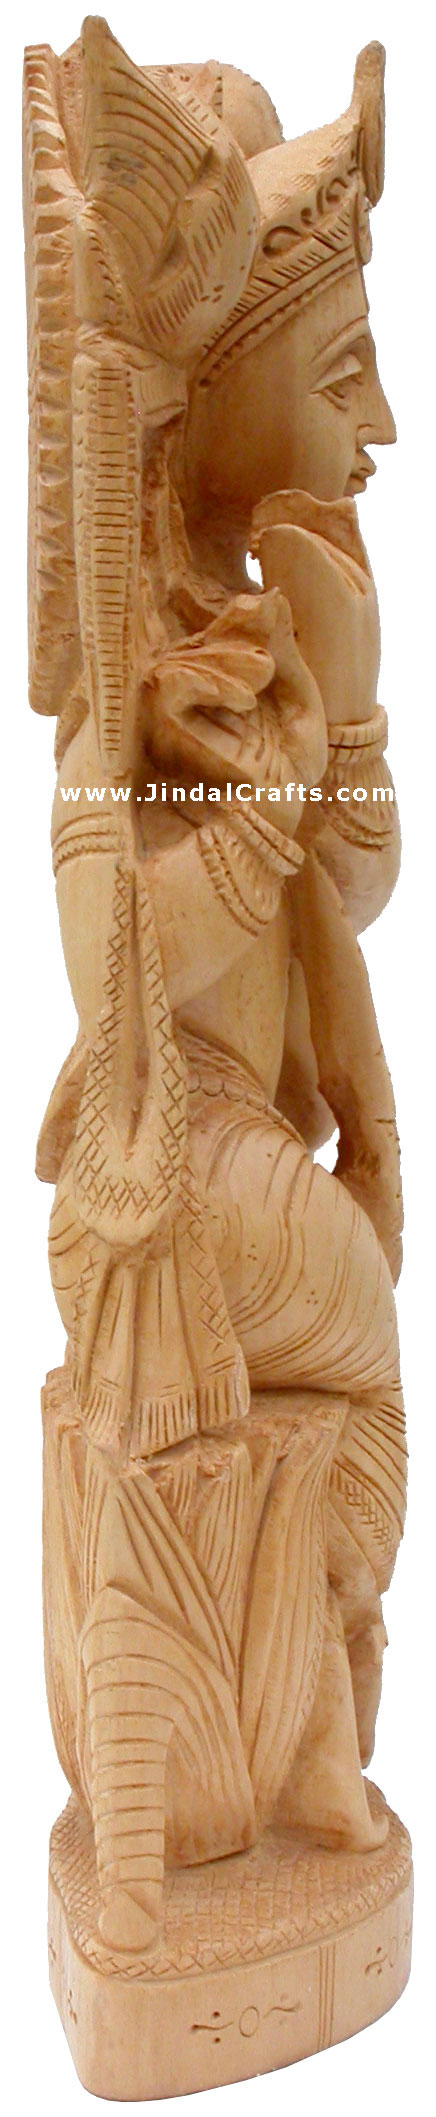 Handcrafted Wooden Krishna Hindu Sculptures Art